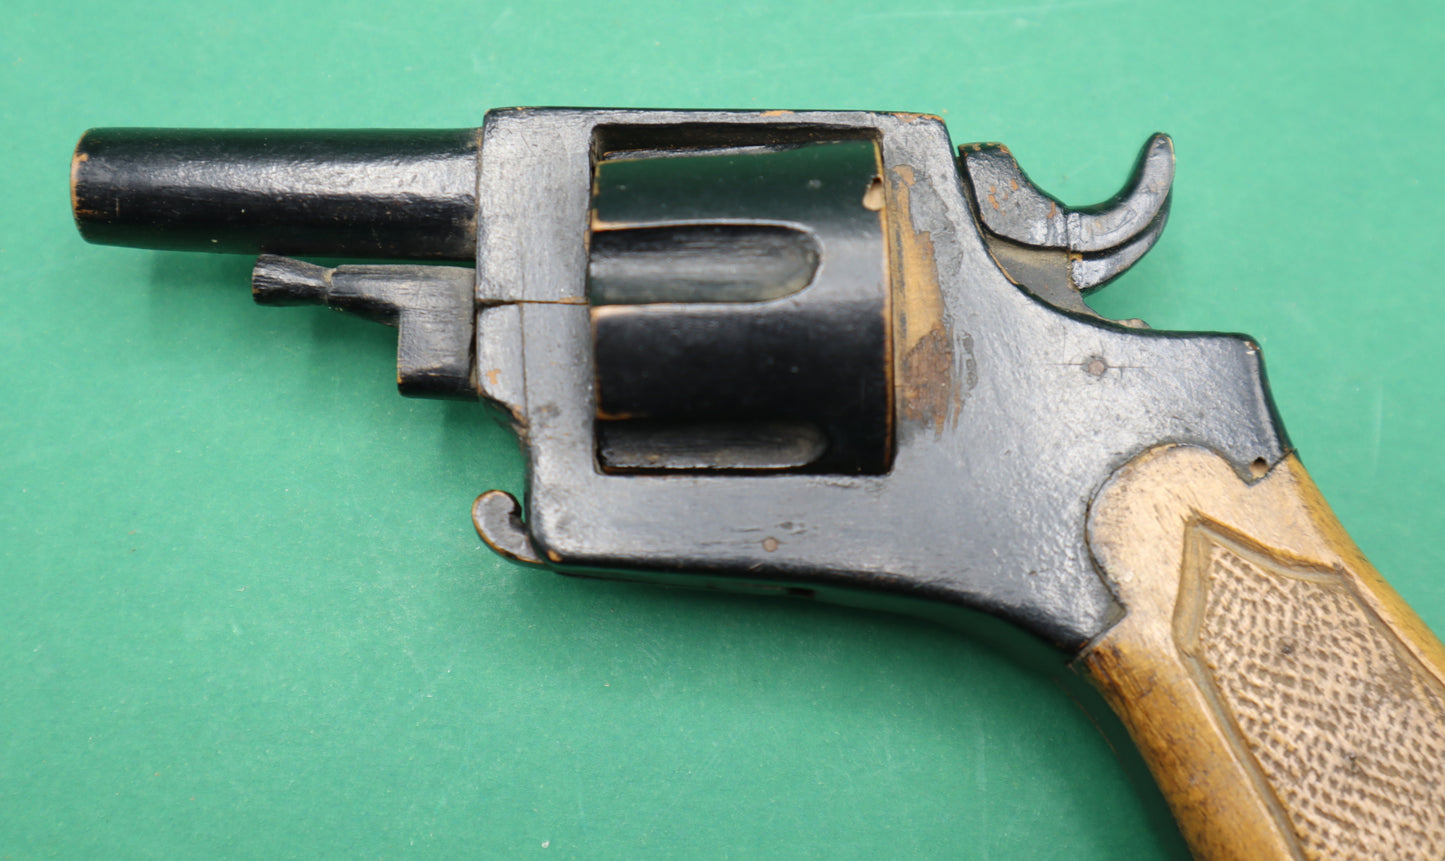 Rarissima pistola giocattolo western colt Edison vintage in legno da collezione